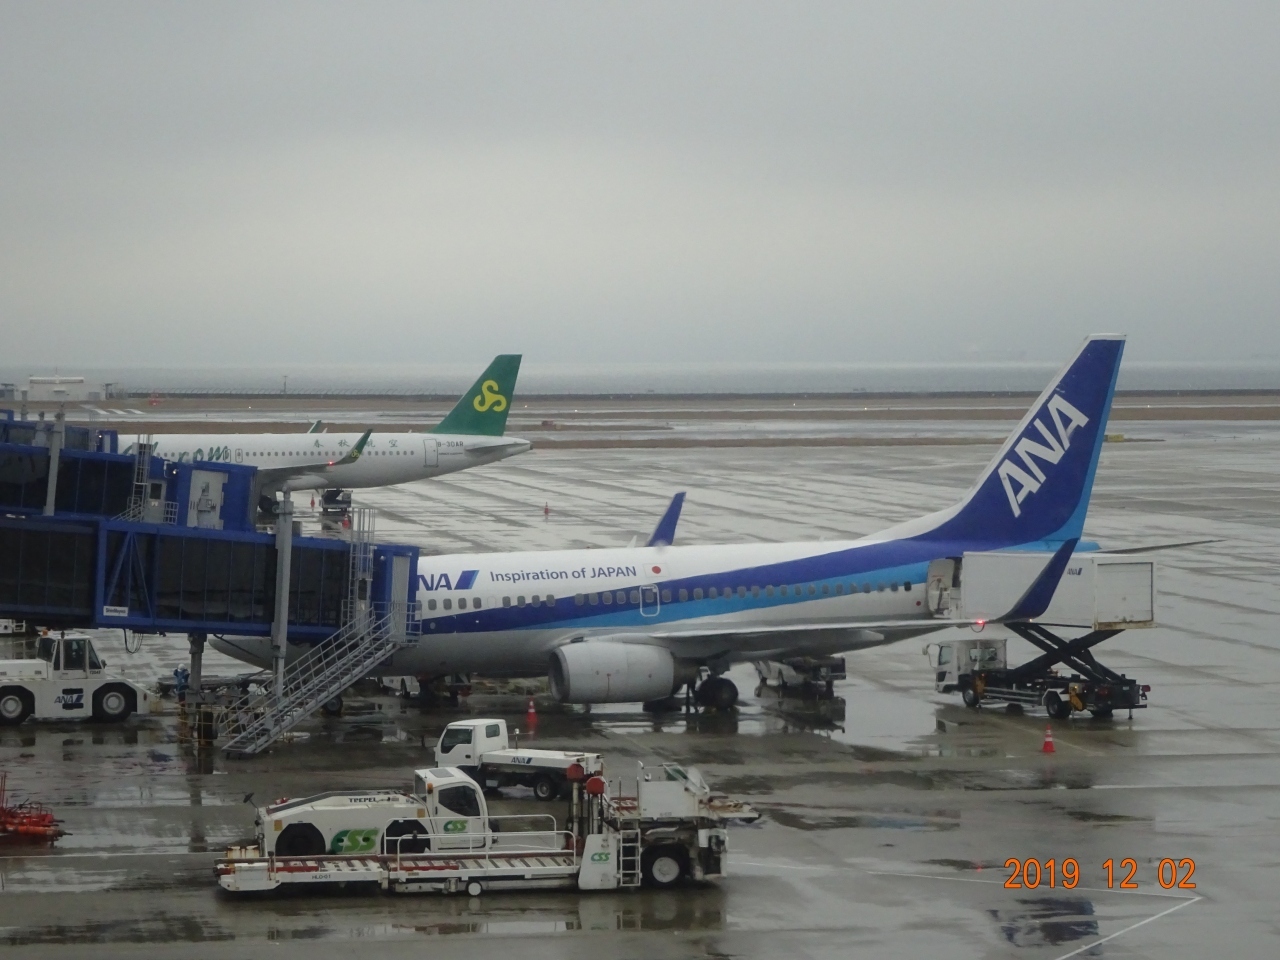 ９番スポットに駐機しています成田行きのＡＮＡ便にもうすぐ搭乗します
Ｂ７３７－７００型機です。